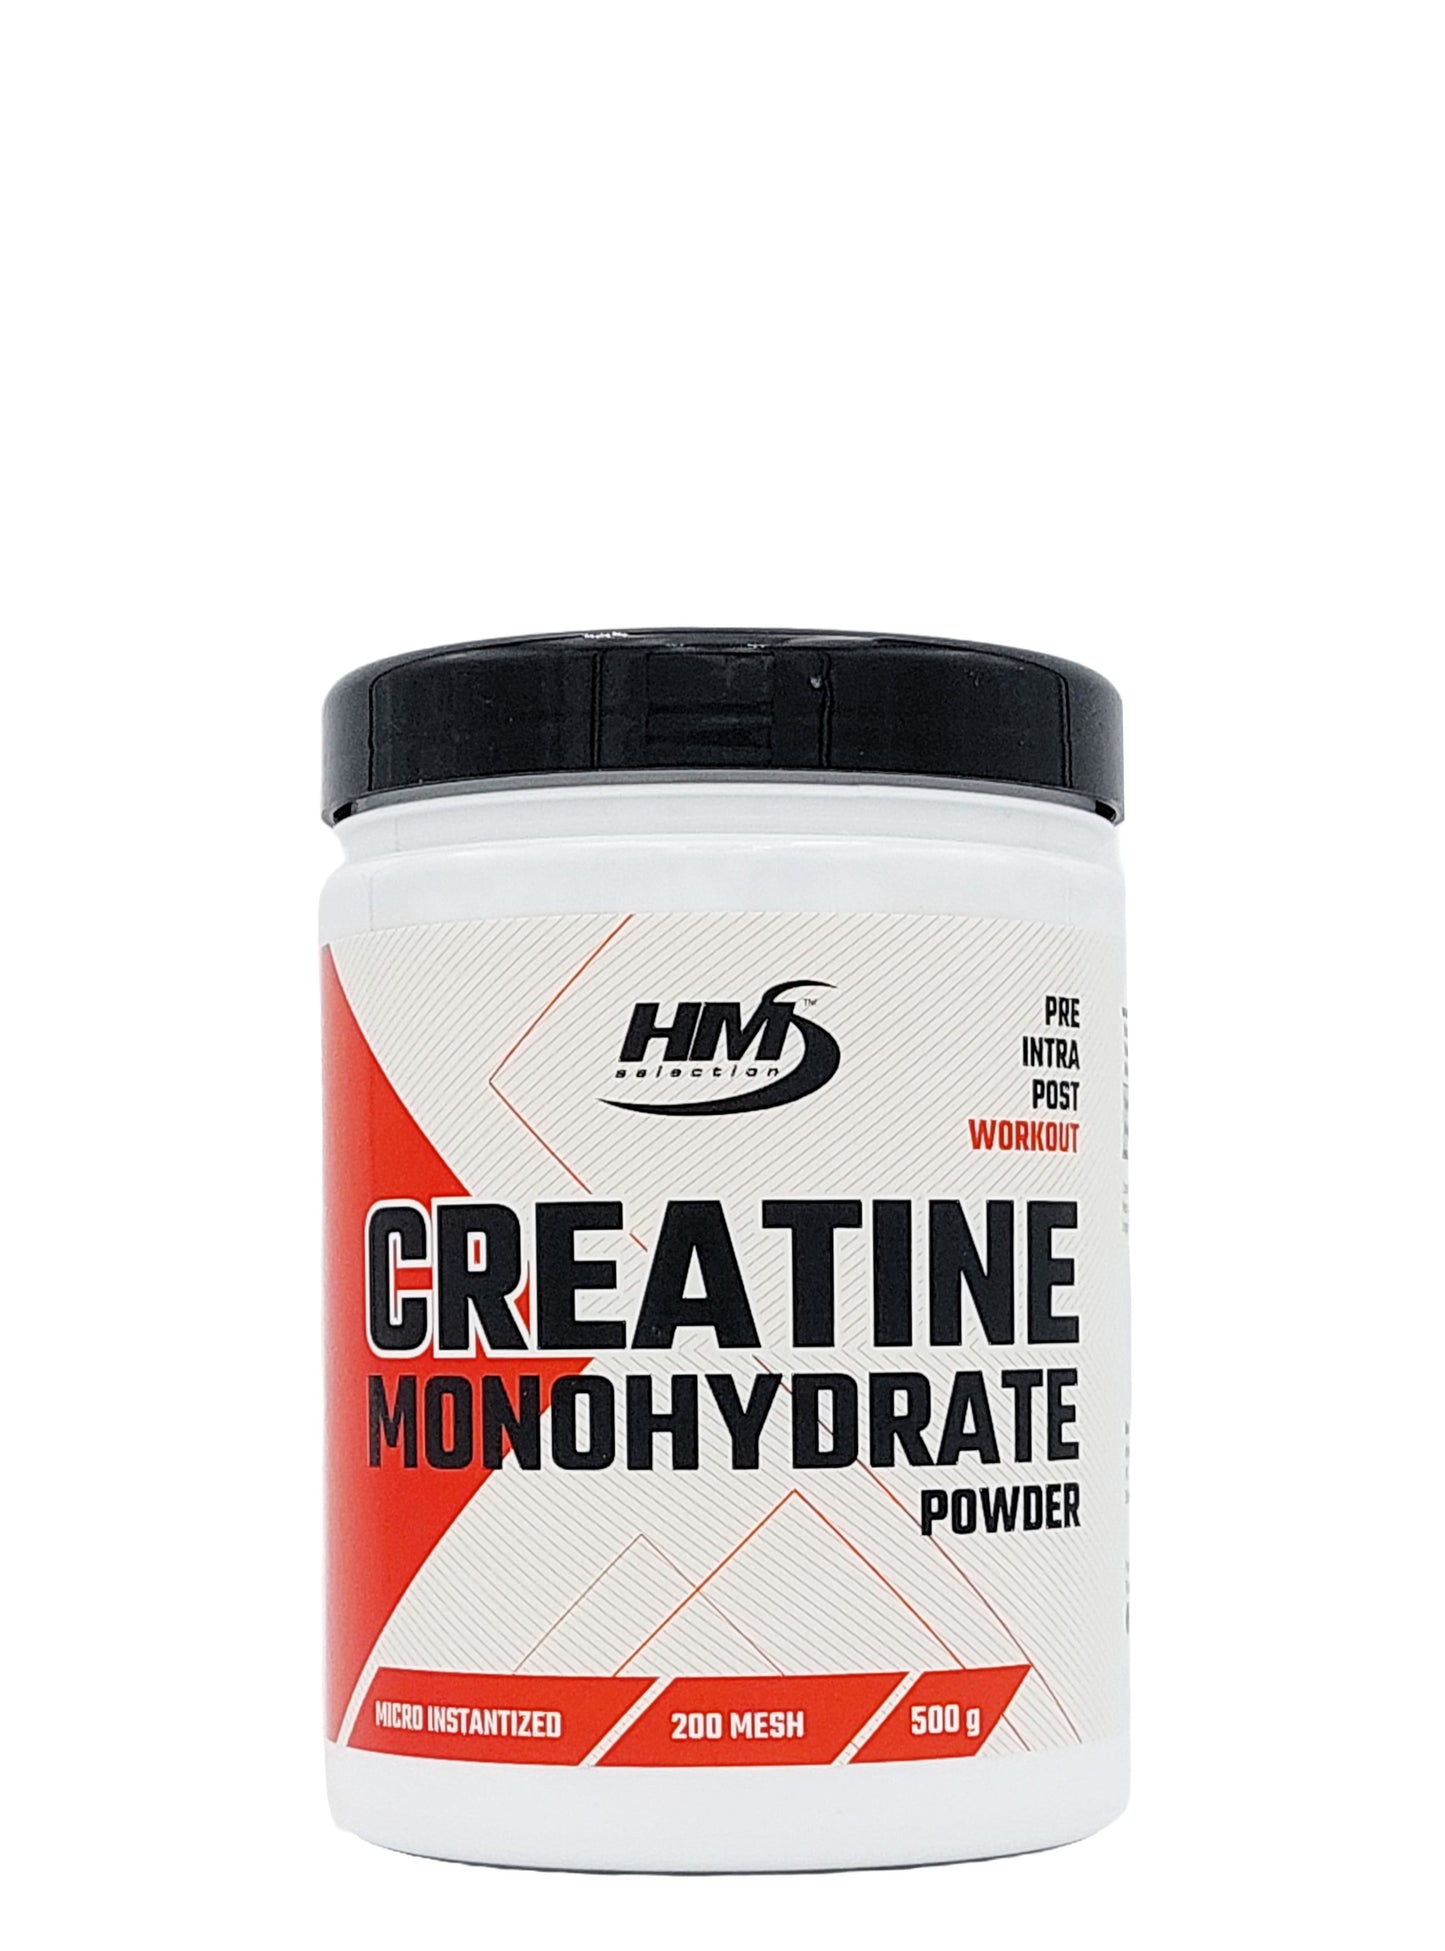 CREATINE MONOHYDRATE Powder, 500g - Nahrungsergänzungsmittel mit Kreatinmonohydrat in mikronisierter Pulverform für intensives Training 